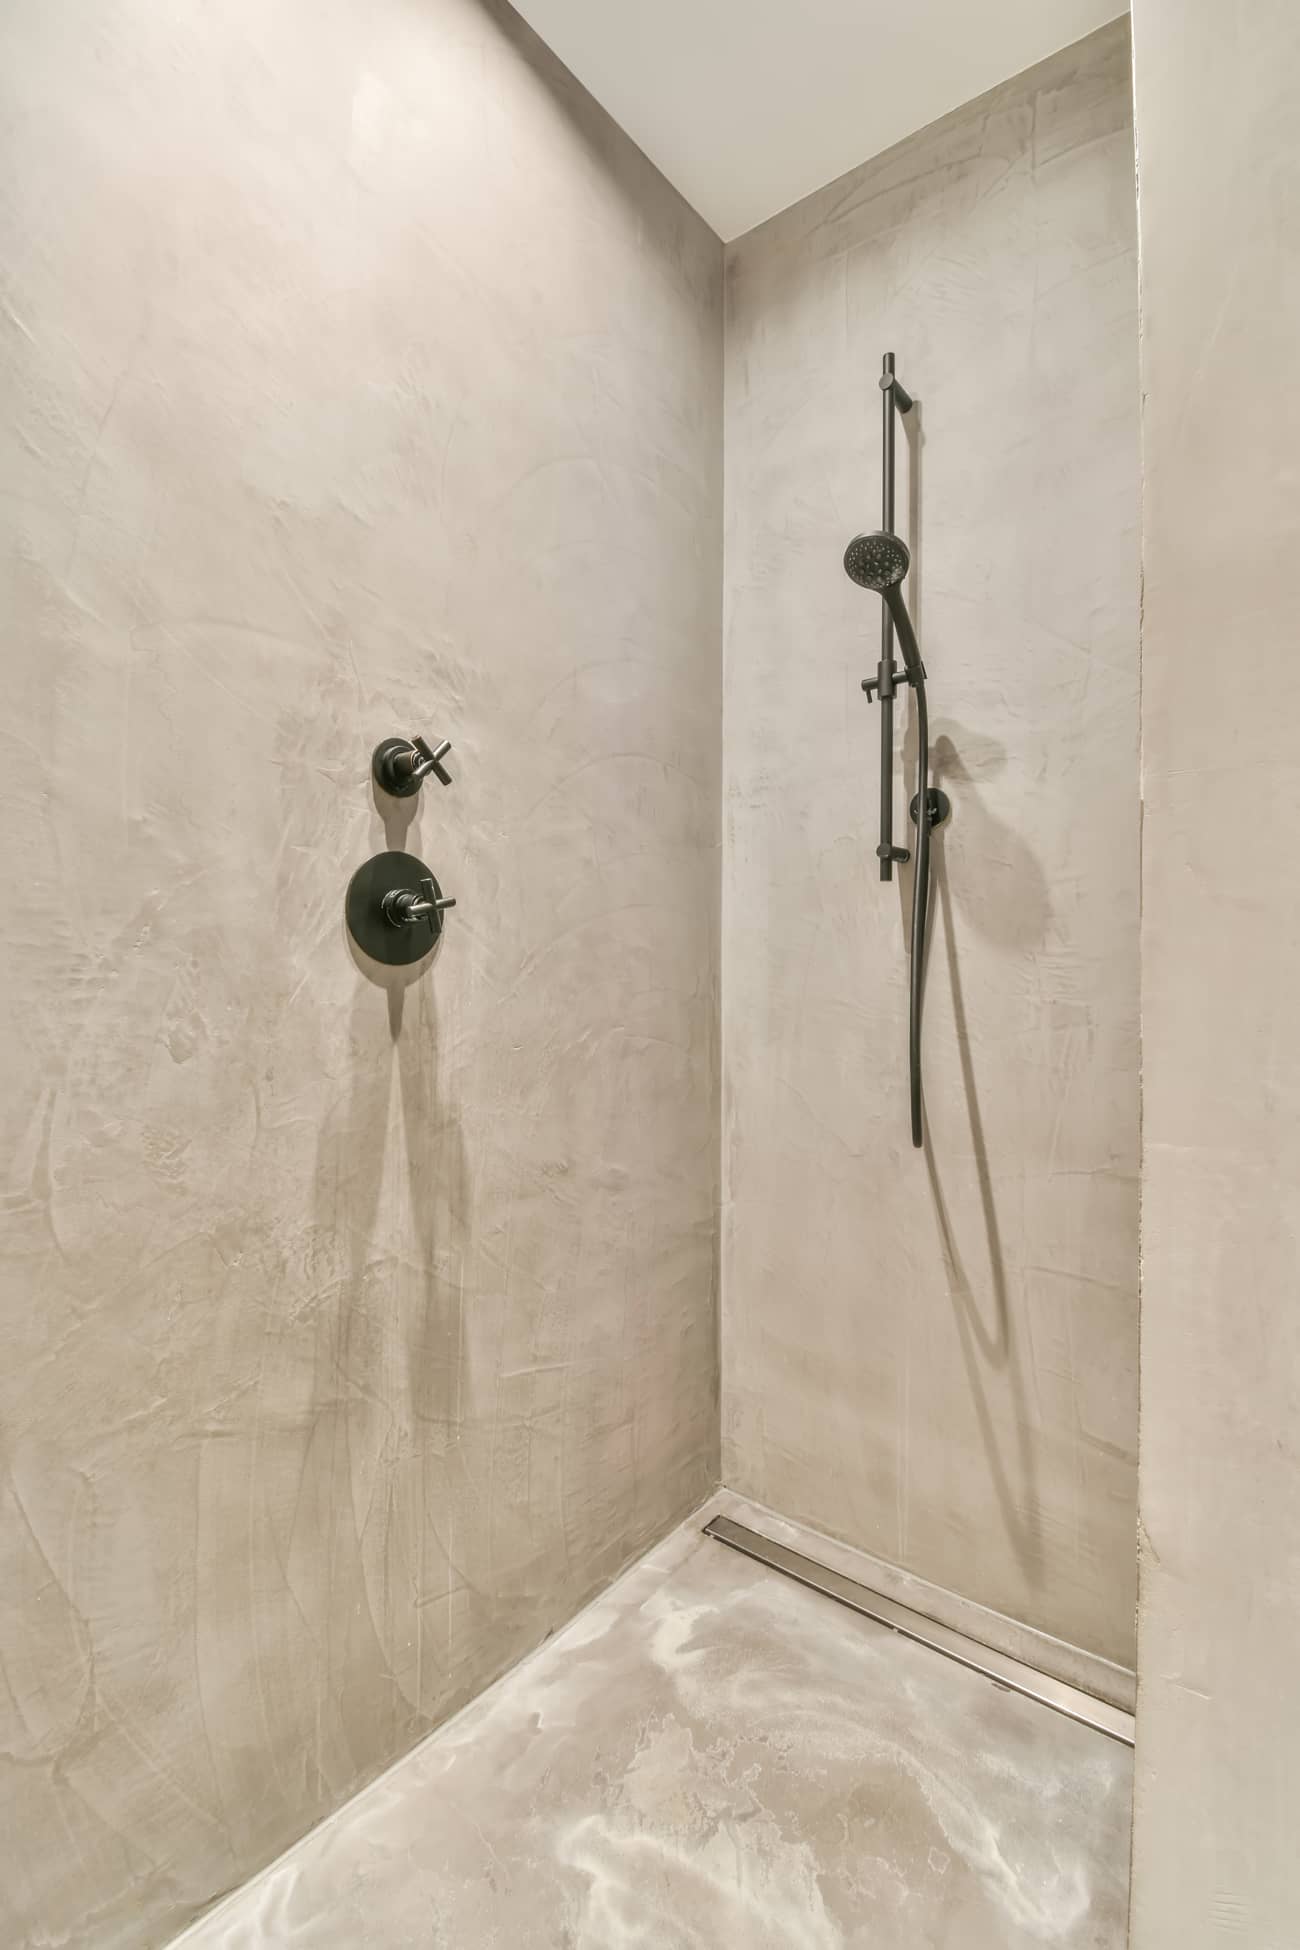 Salle de bain rénovée avec douche en béton ciré au sol et aux murs